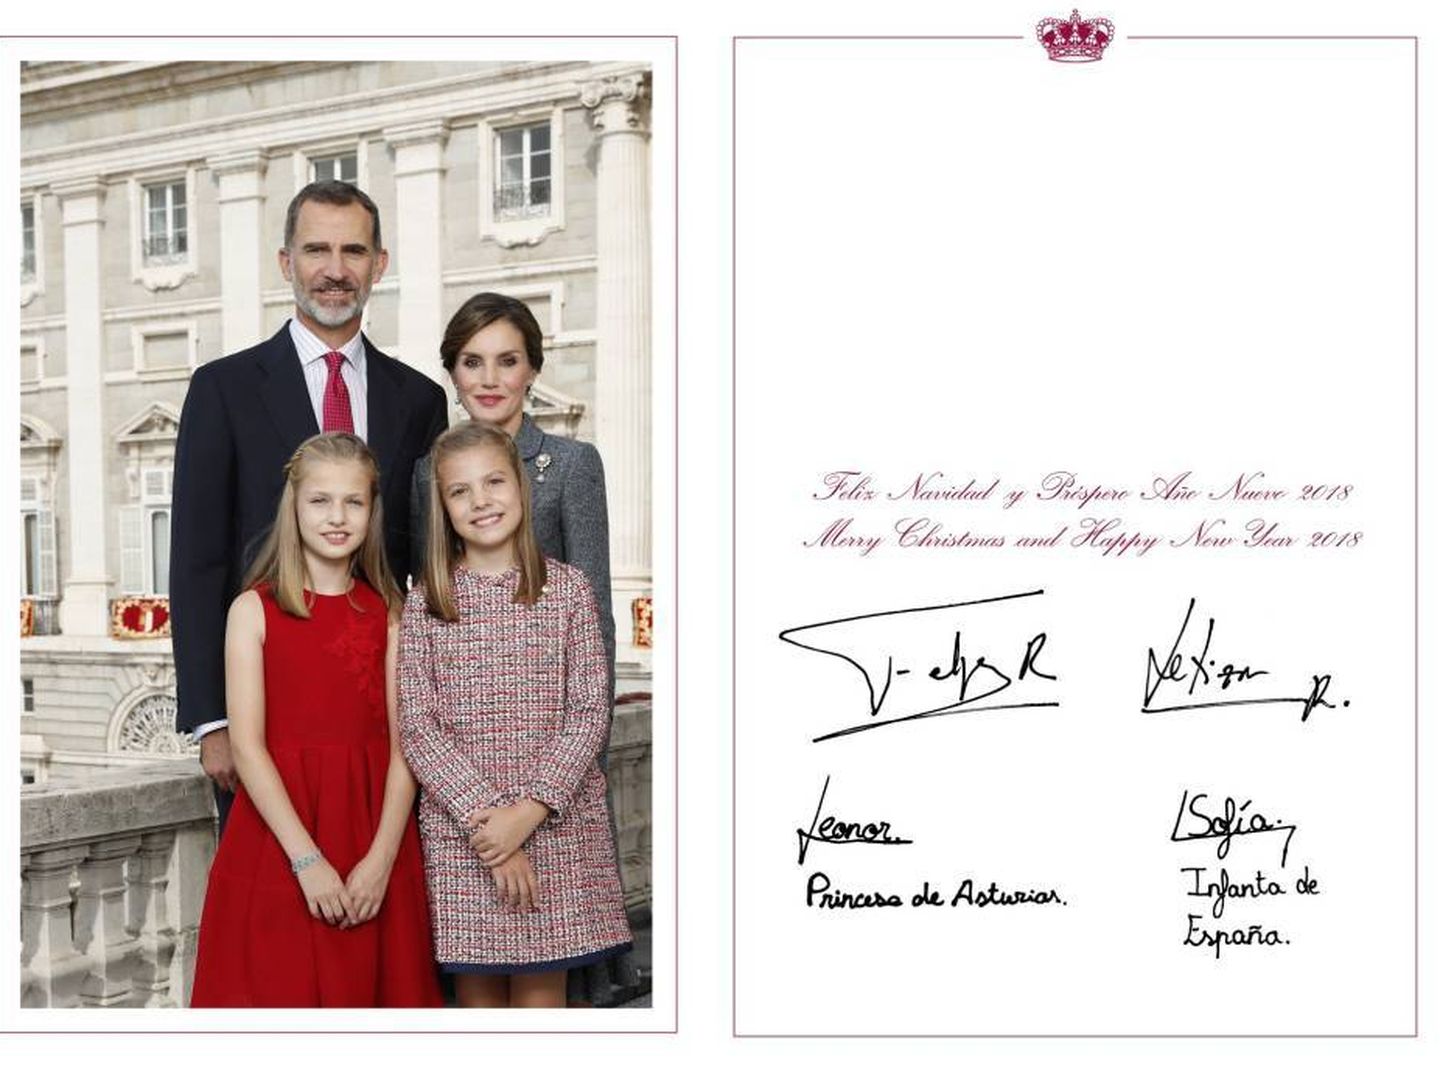  La felicitación de 2017. (Casa Real)